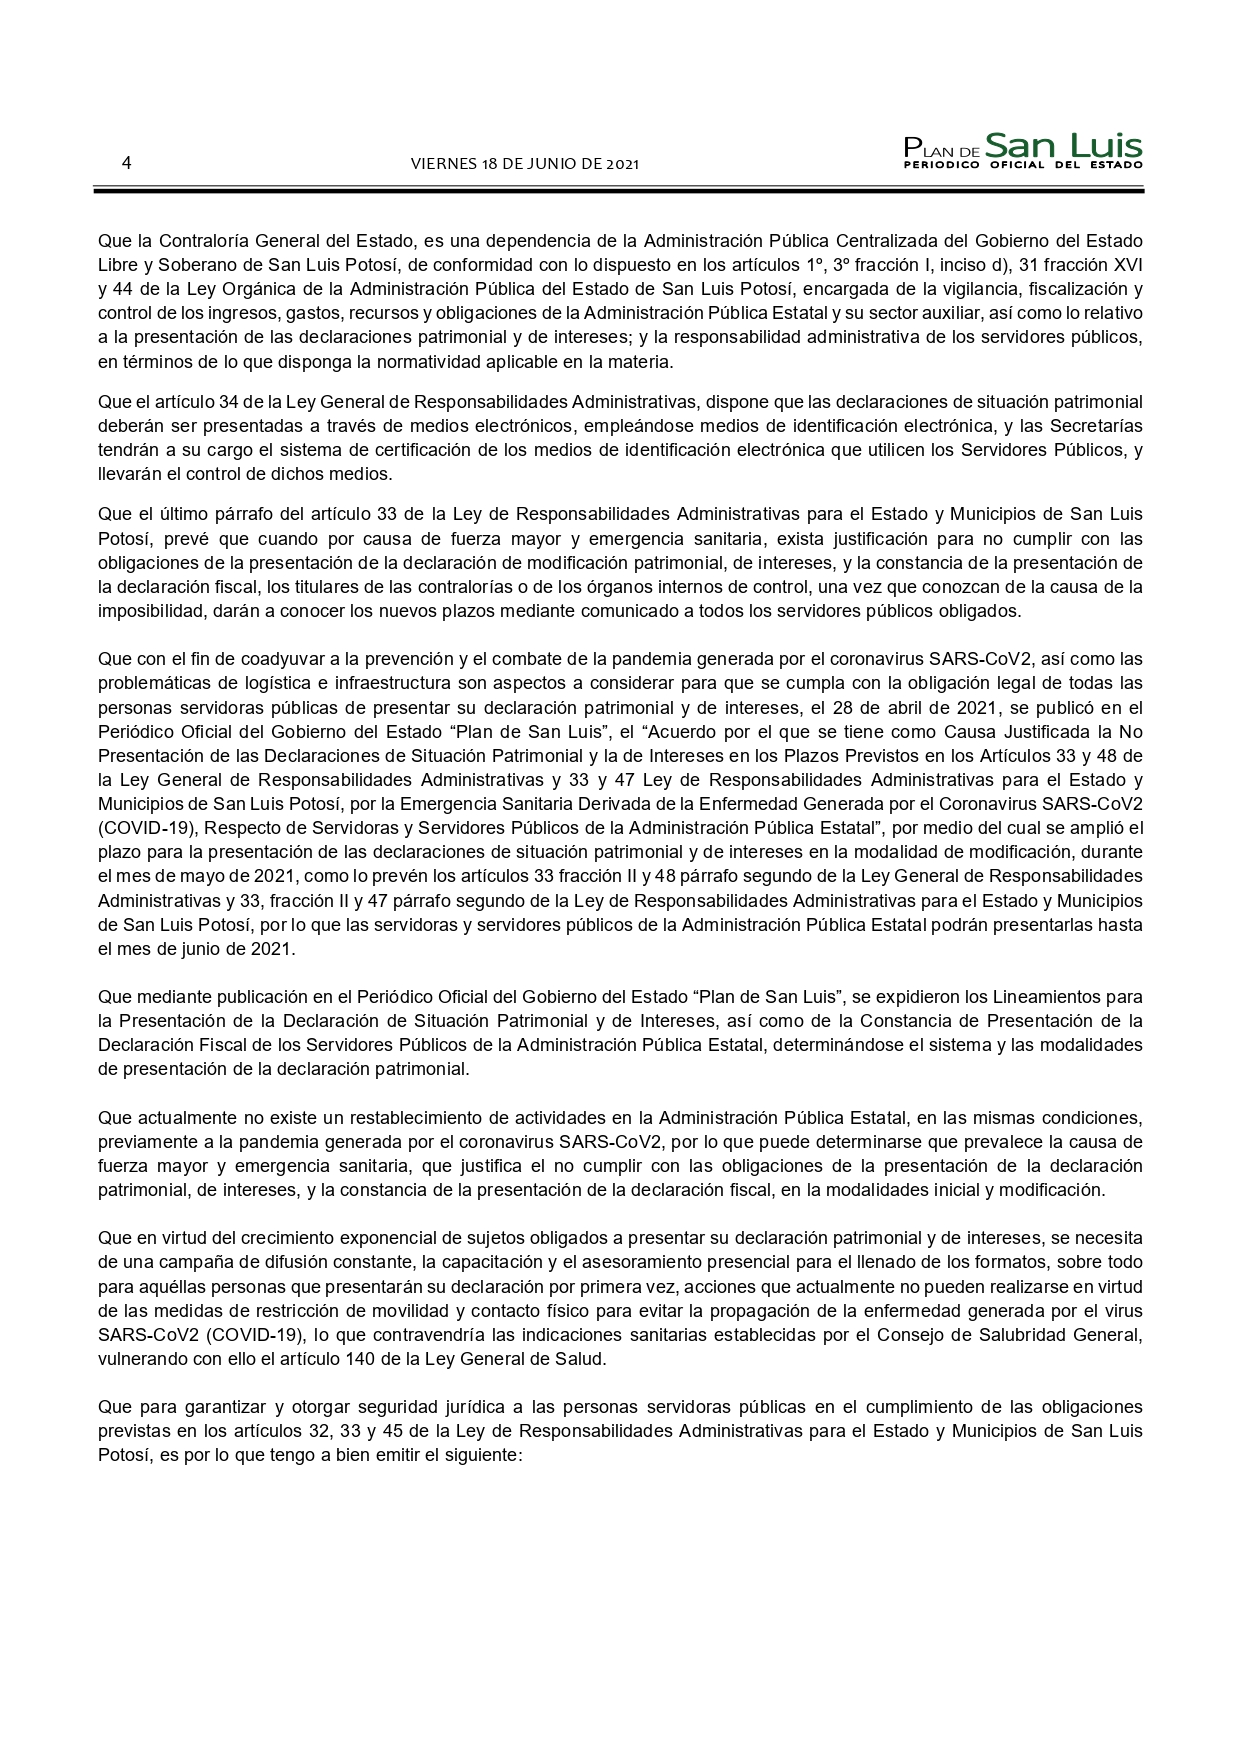 SLP ACUERDO CONTRALORIA GENERAL MODIFICA PLAZO DE DECLARACIONES (18-JUN-2021) (1)_page-0004.jpg